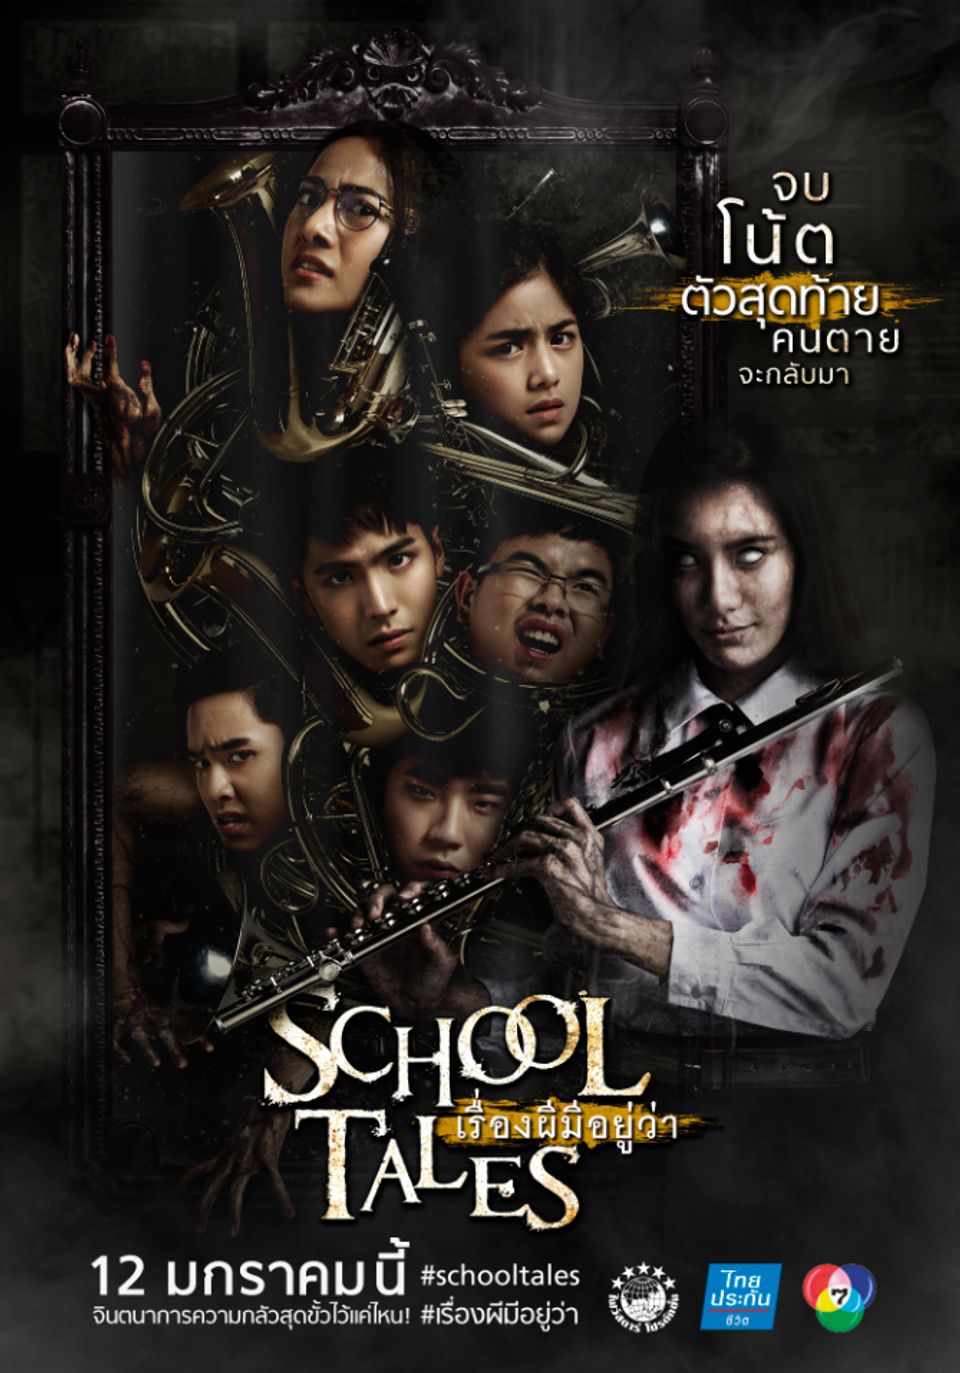 ภาพยนตร์ไทย “SCHOOL TALES เรื่องผีมีอยู่ว่า”